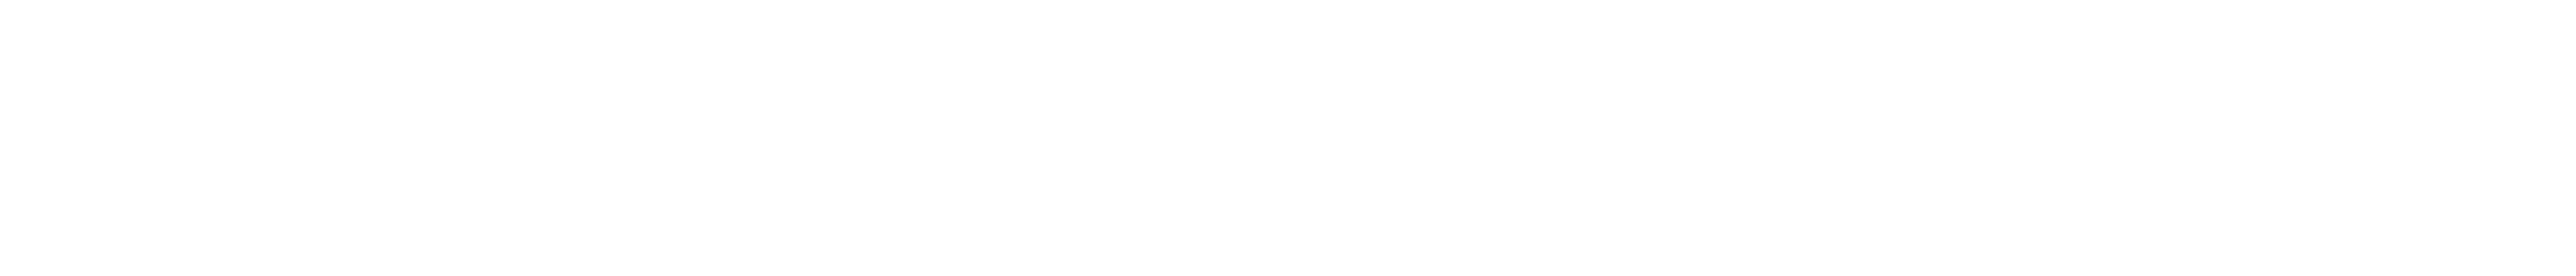 Method and Matter logo